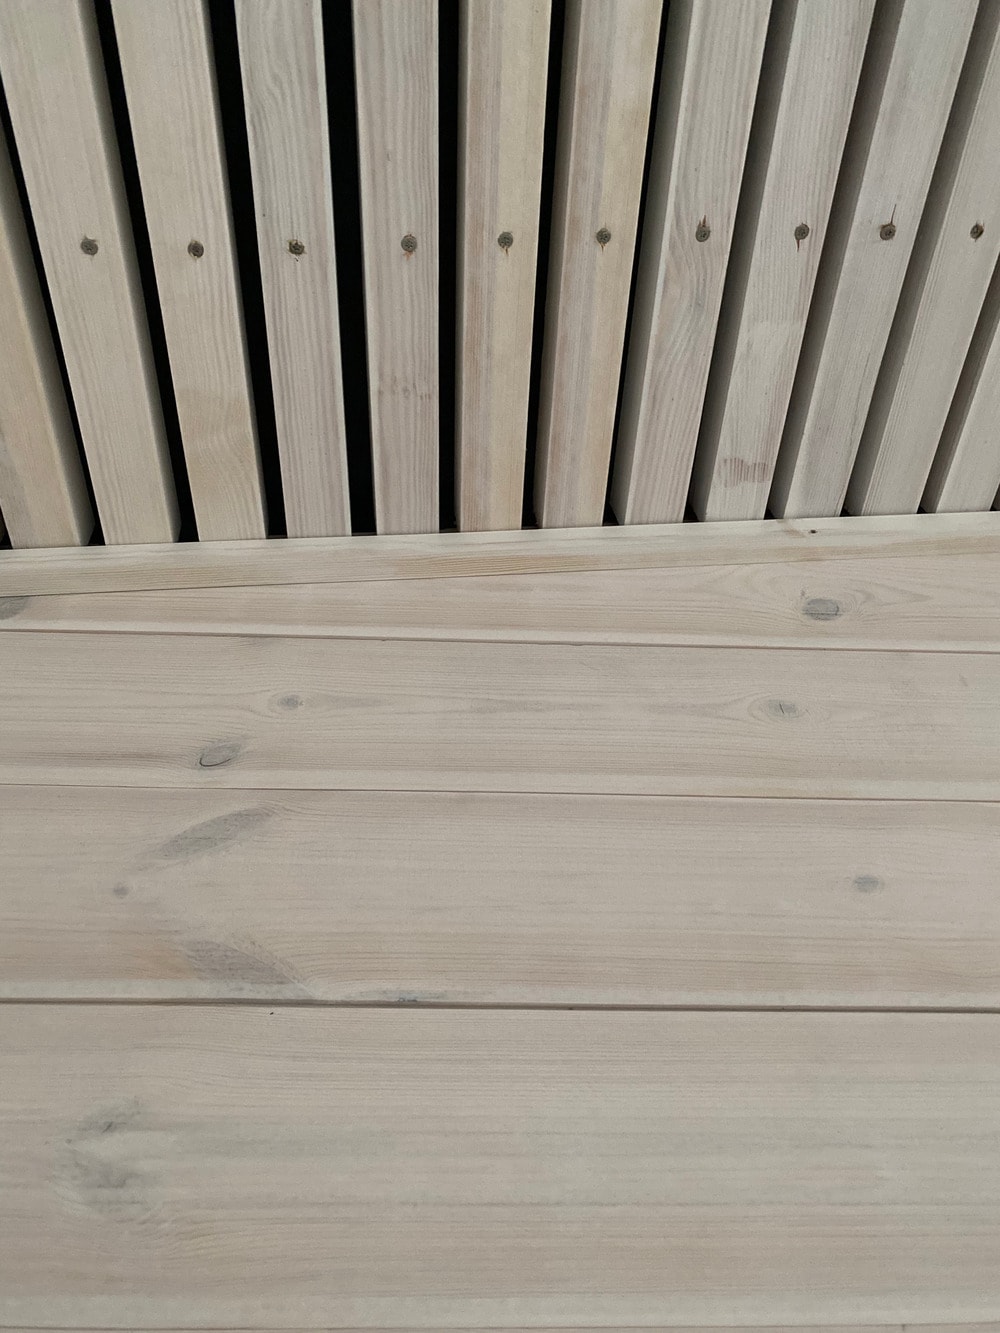 这是一个近距离观察房子的木天花板，展示了木墙和木天花板之间的区别。